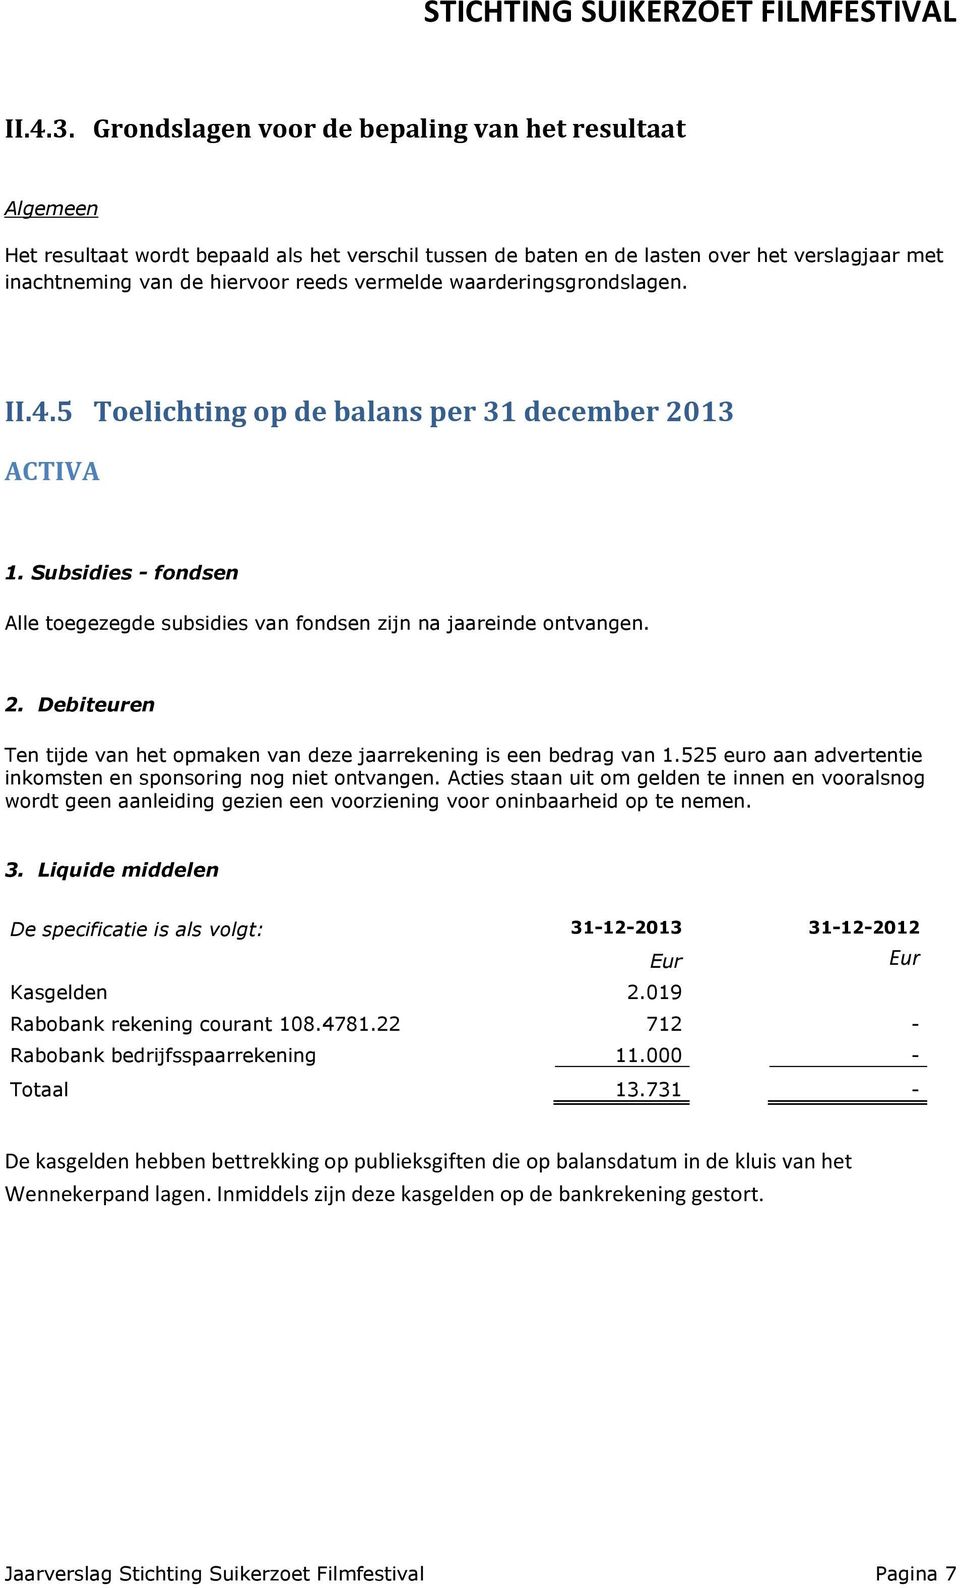 waarderingsgrondslagen. II.4.5 Toelichting op de balans per 31 december 2013 ACTIVA 1. Subsidies - fondsen Alle toegezegde subsidies van fondsen zijn na jaareinde ontvangen. 2. Debiteuren Ten tijde van het opmaken van deze jaarrekening is een bedrag van 1.